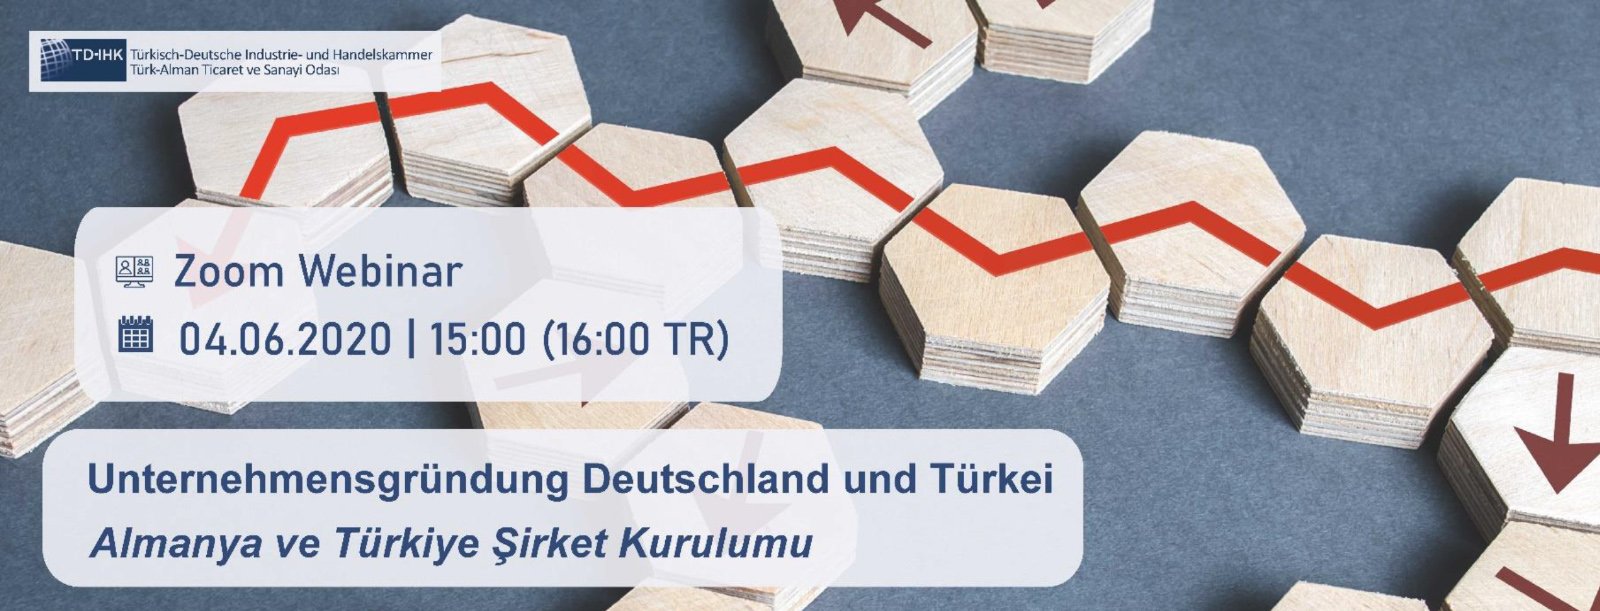 TD-IHK Online Seminar: Unternehmensgründung Deutschland und Türkei